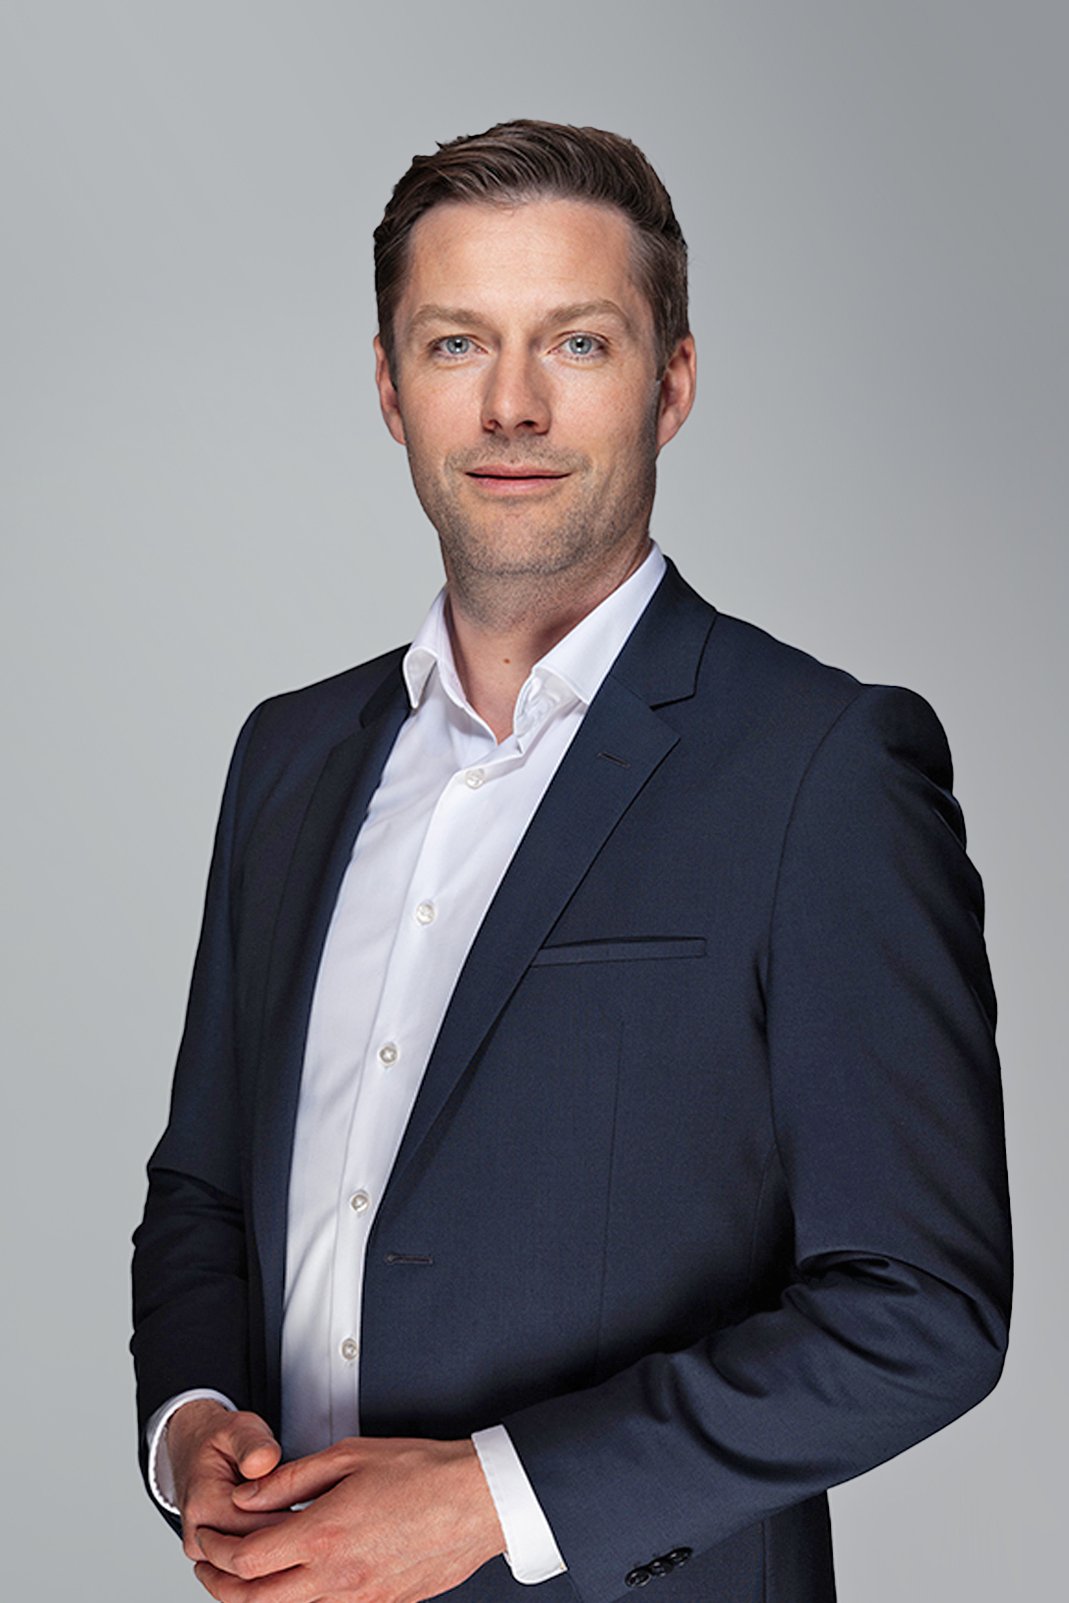 Ceconomy: Neuer Geschäftsführer bei MediaMarkt Österreich